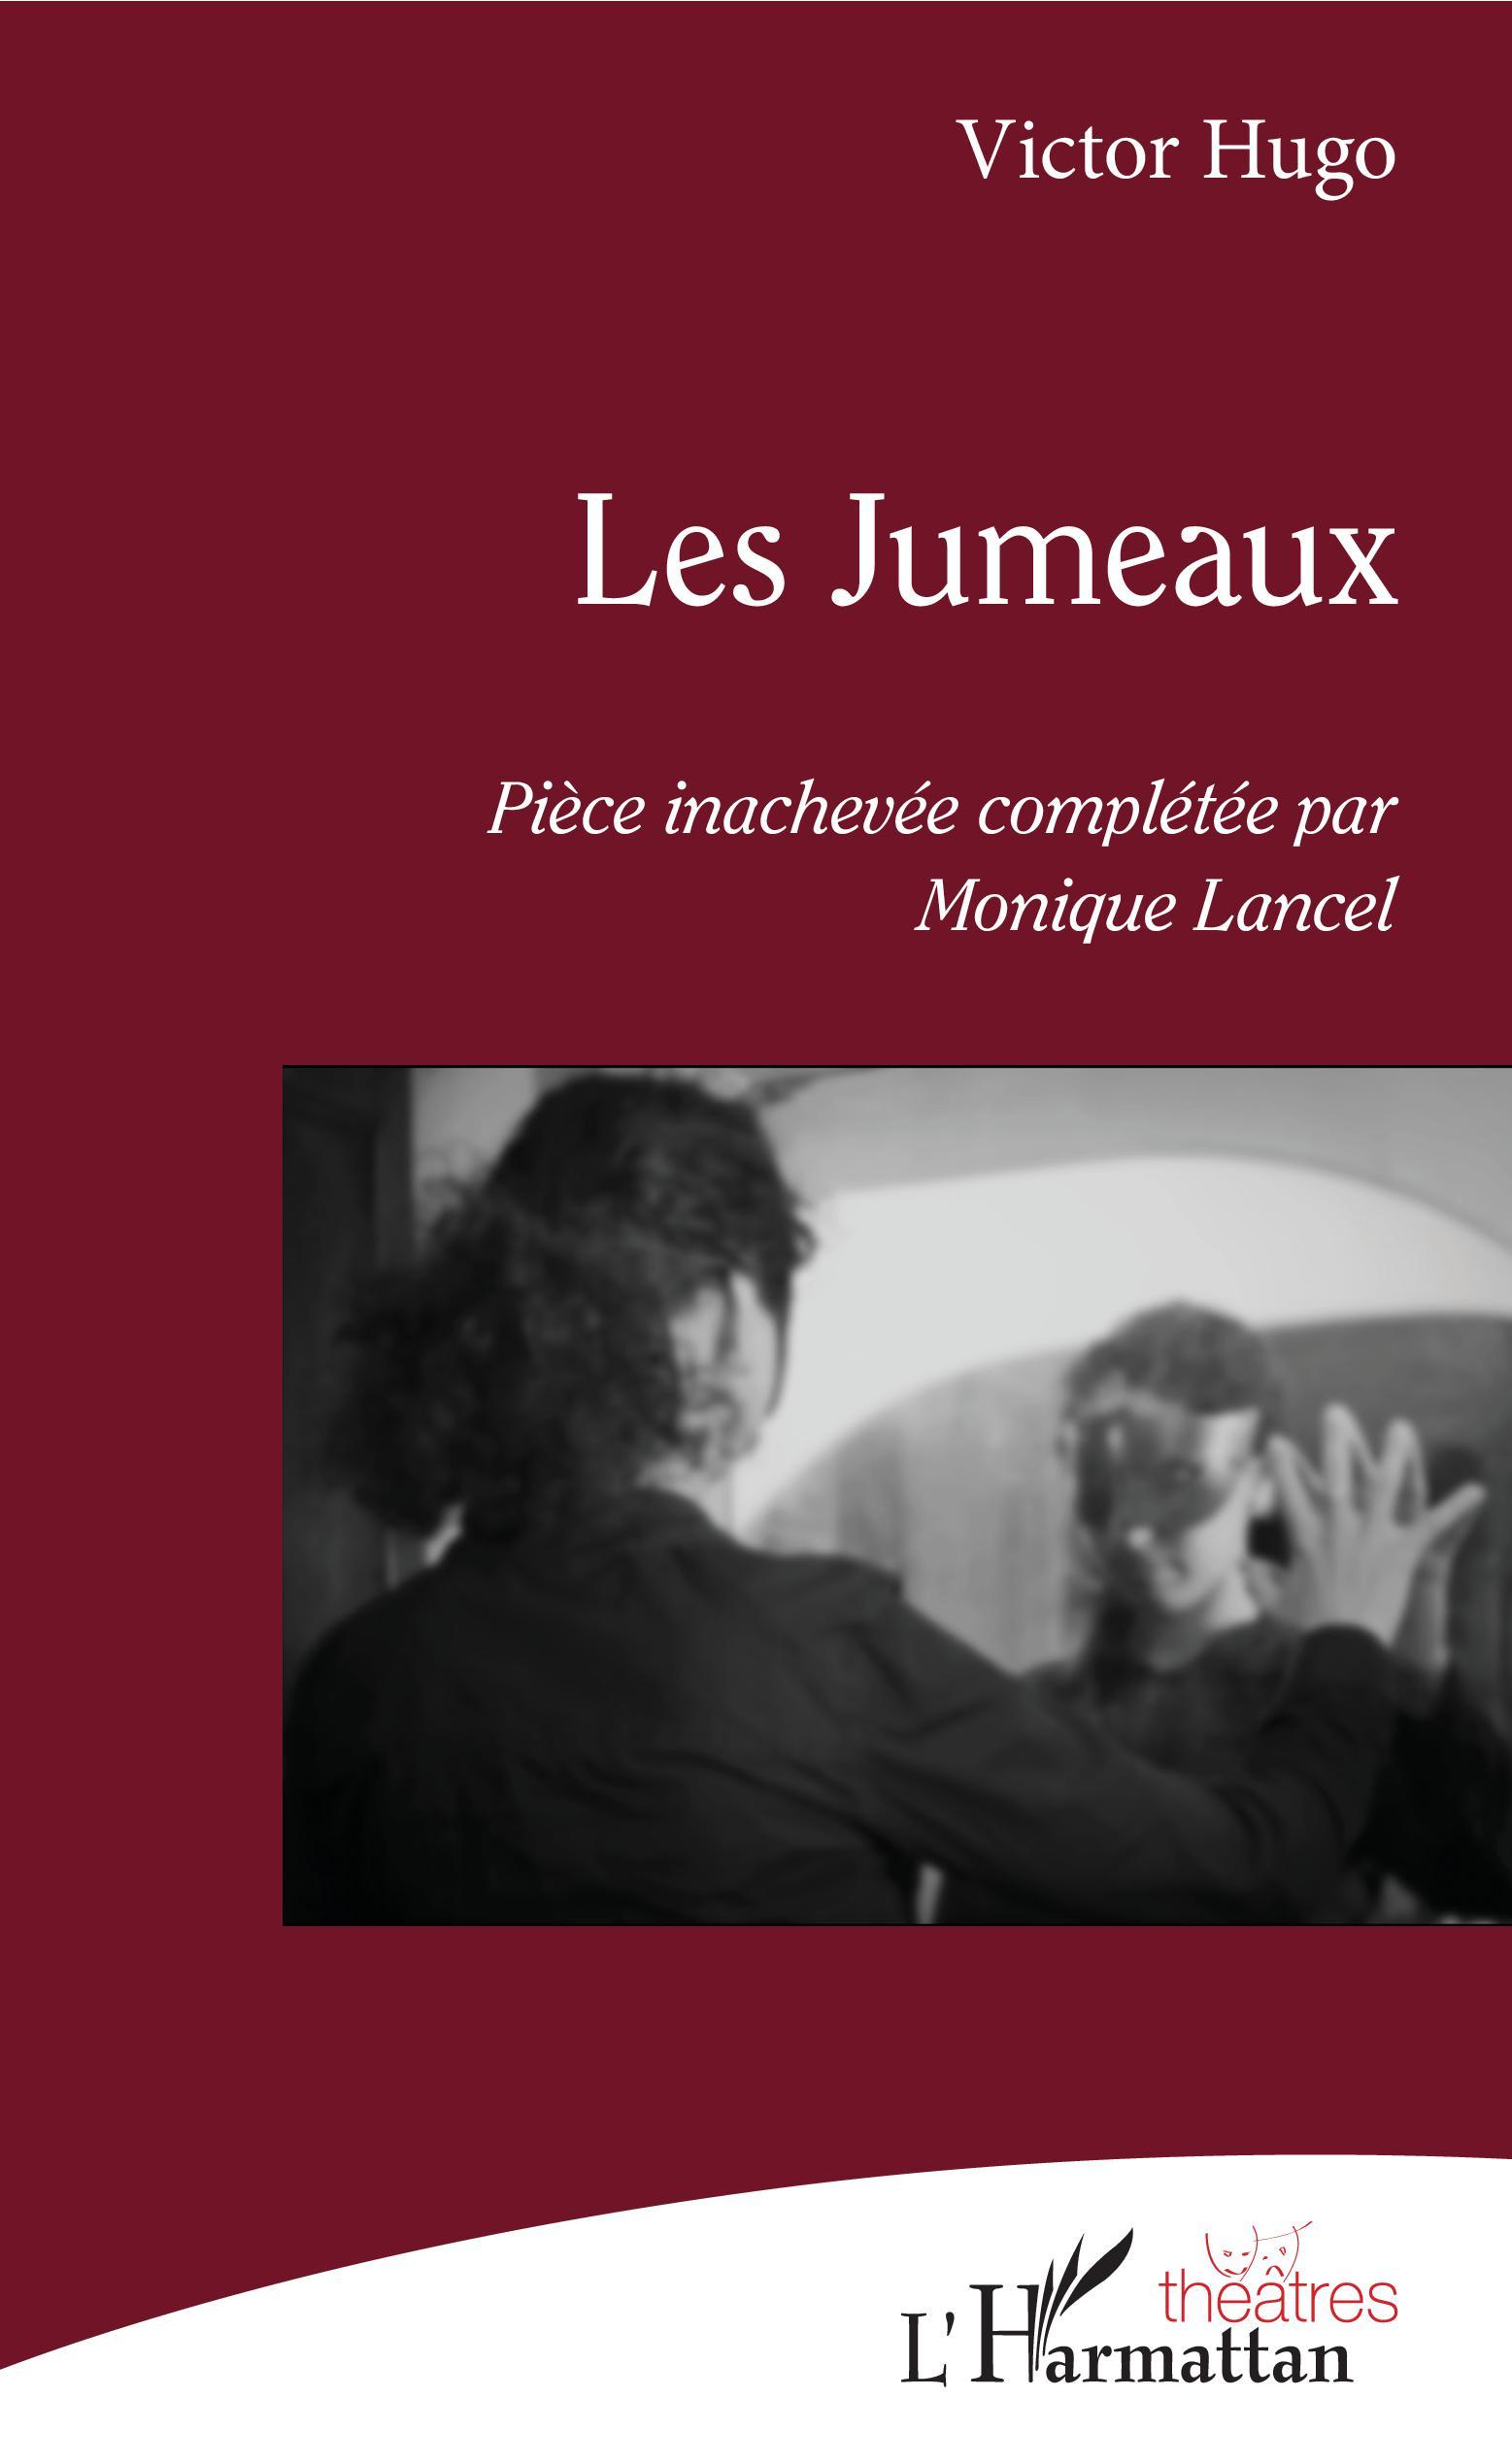 Les Jumeaux, Pièce inachevée de Victor Hugo complétée par Monique Lancel (9782343169538-front-cover)